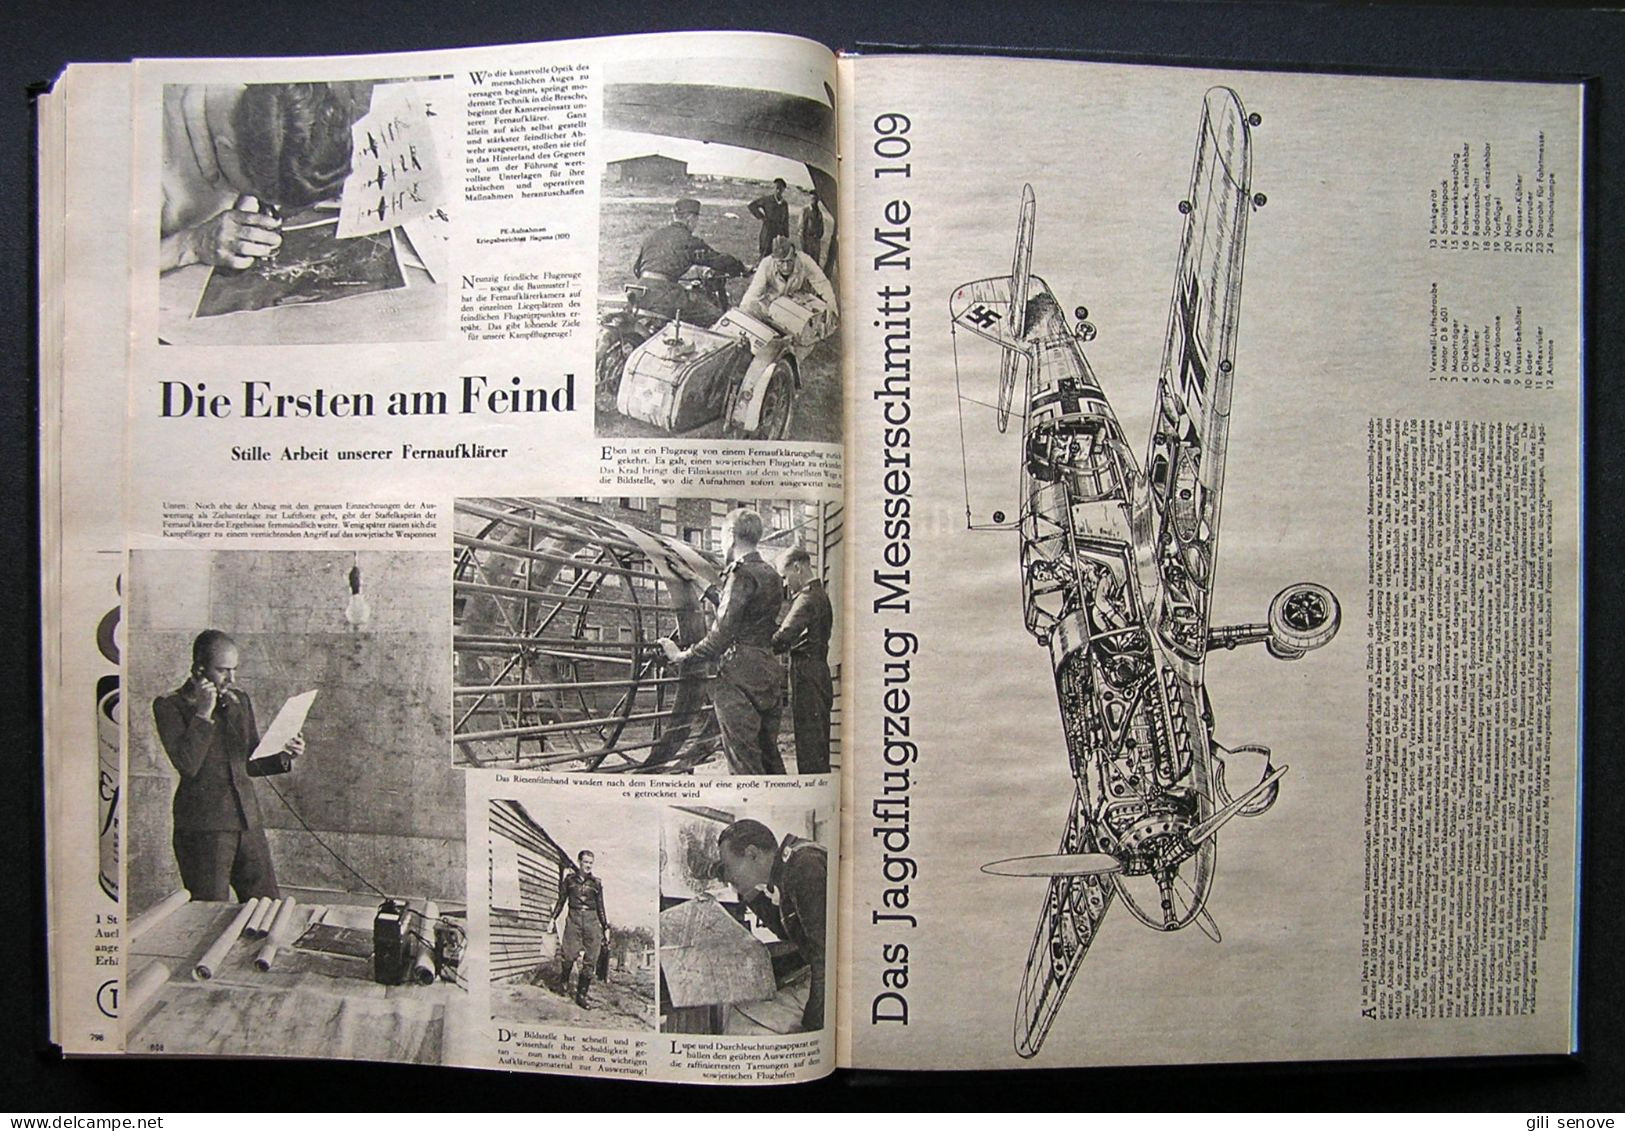 Der Adler Original WW2 German Luftwaffe Magazines in Folio Collection 1942